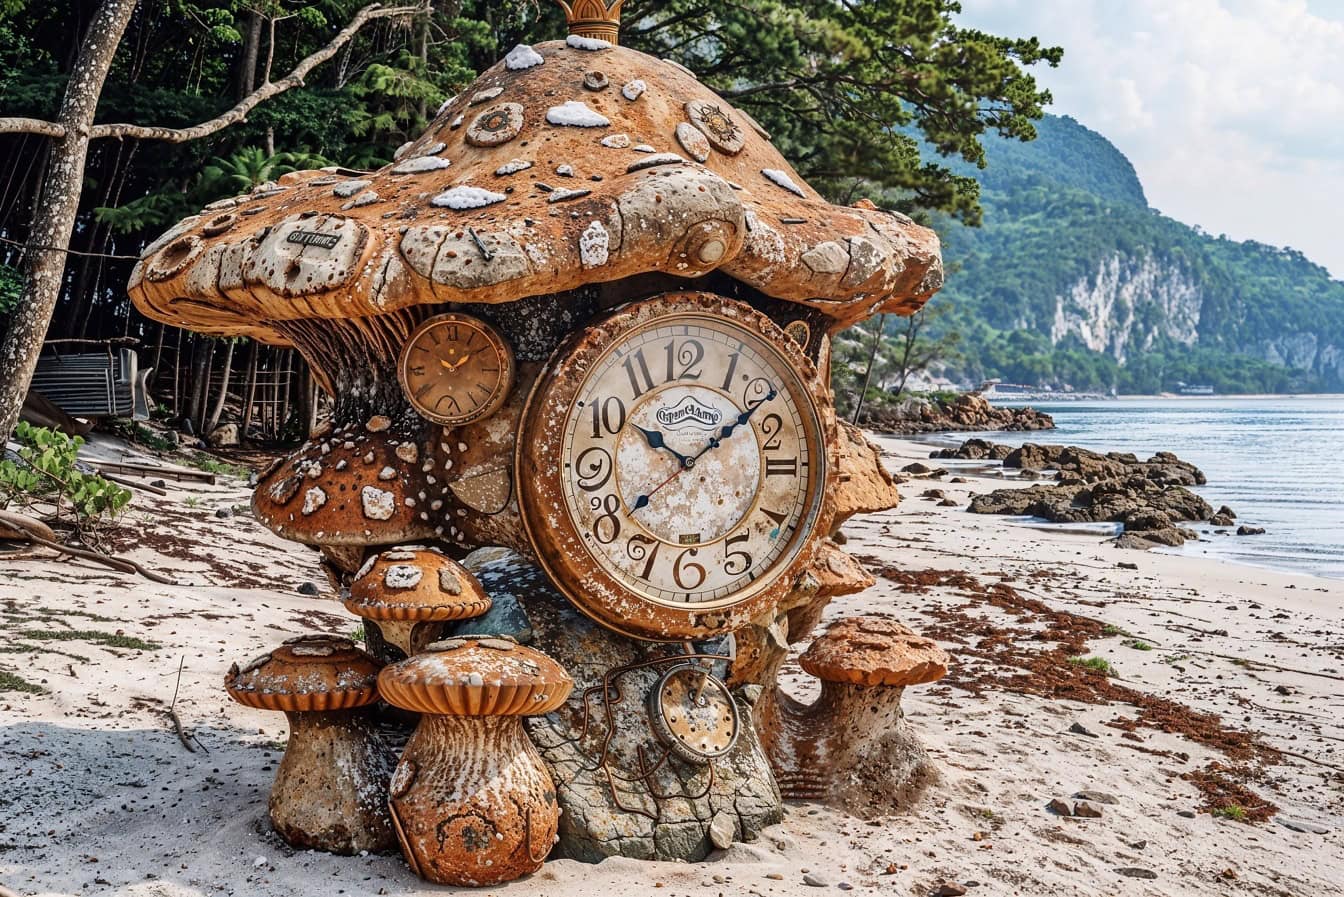 Zegar analogowy w kształcie bajkowego grzyba na plaży